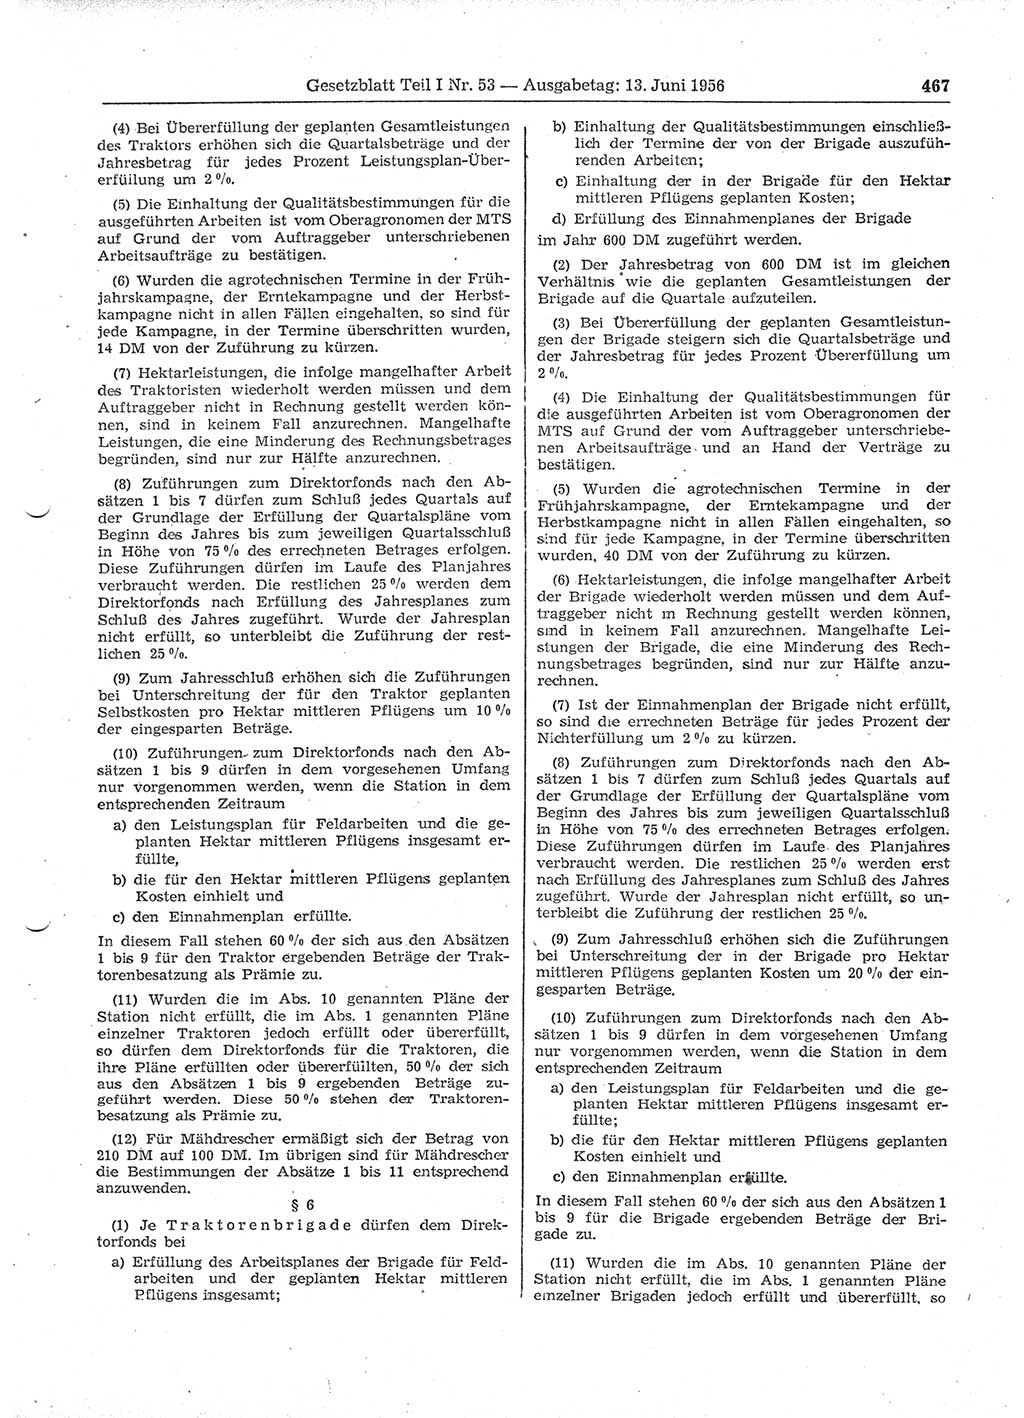 Gesetzblatt (GBl.) der Deutschen Demokratischen Republik (DDR) Teil Ⅰ 1956, Seite 467 (GBl. DDR Ⅰ 1956, S. 467)